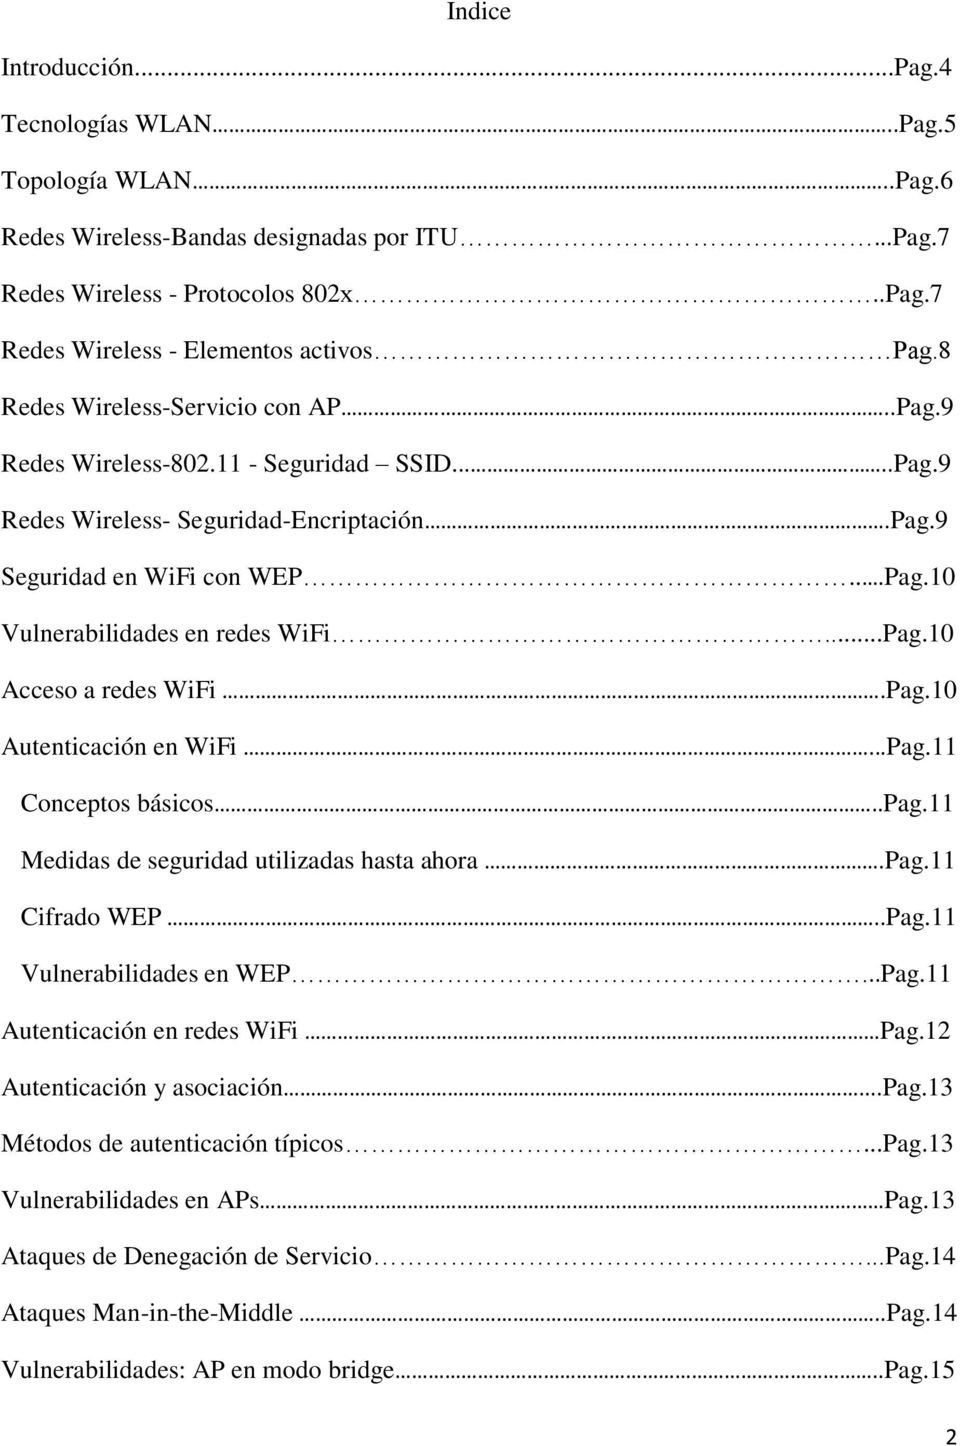 ..Pag.10 Acceso a redes WiFi.Pag.10 Autenticación en WiFi...Pag.11 Conceptos básicos..pag.11 Medidas de seguridad utilizadas hasta ahora.pag.11 Cifrado WEP..Pag.11 Vulnerabilidades en WEP...Pag.11 Autenticación en redes WiFi Pag.